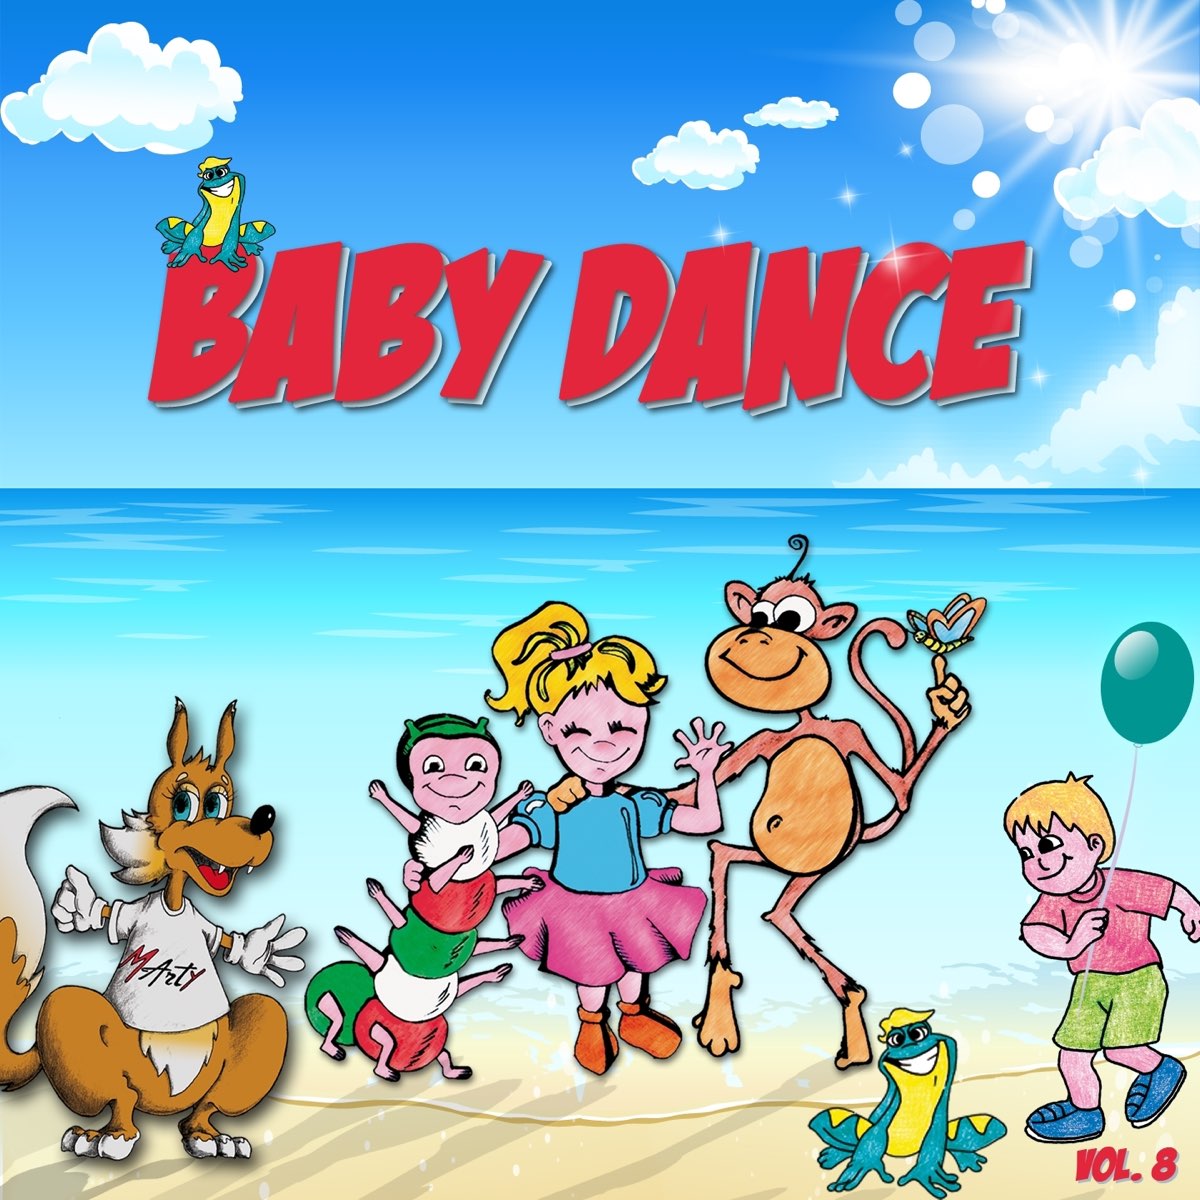 Baby Dance, Vol. 8 (Canzoni per bambini) - Album by Del Baldo - Apple Music